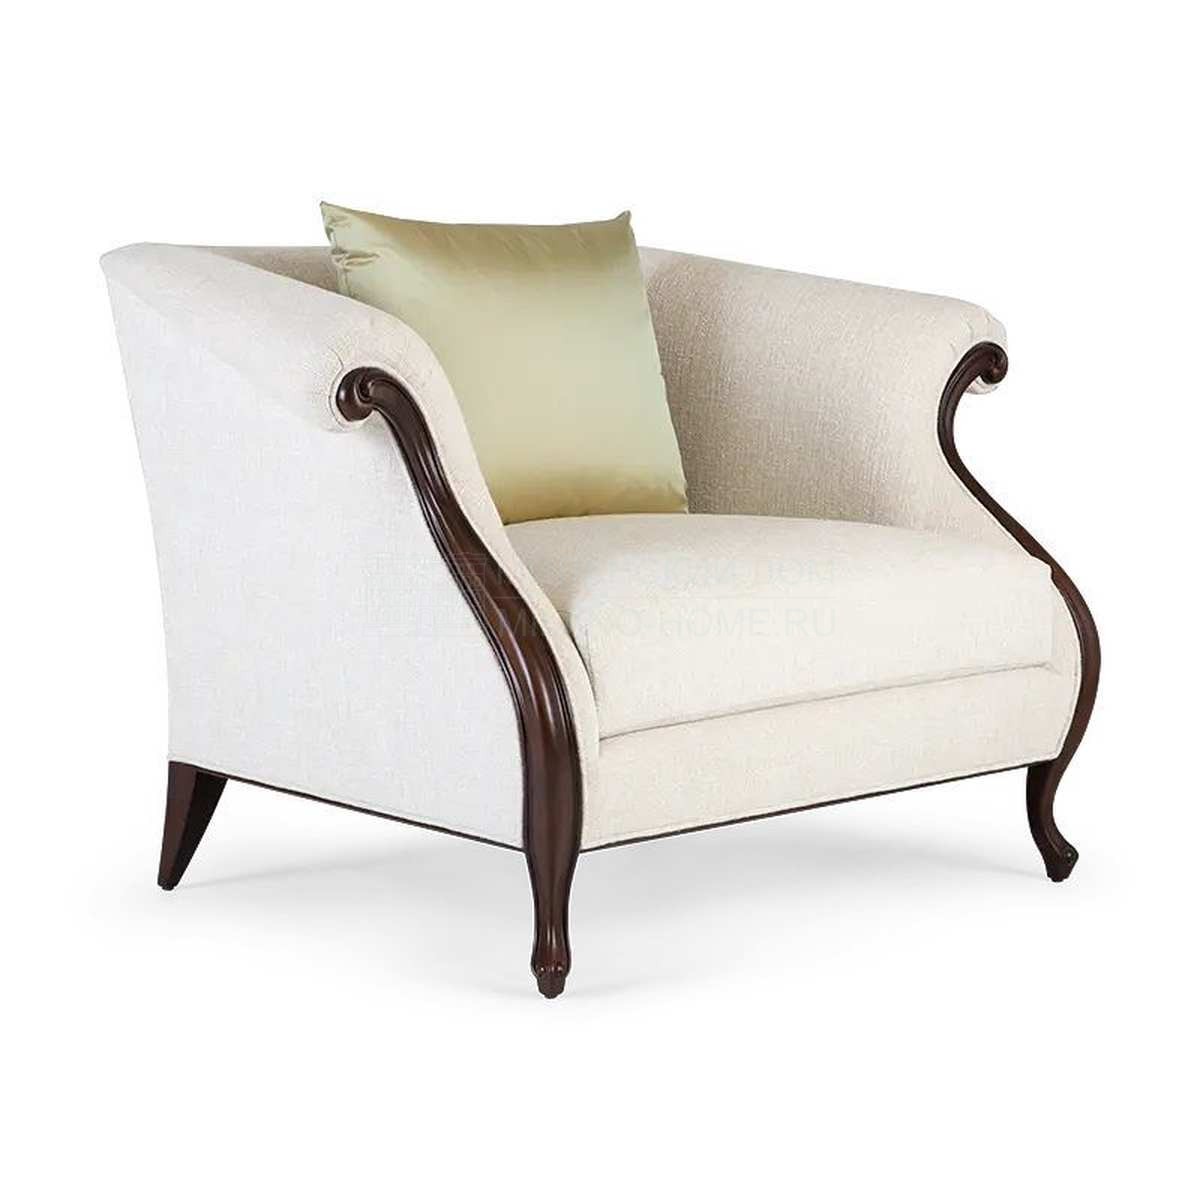 Кресло Vernier low armchair из США фабрики CHRISTOPHER GUY